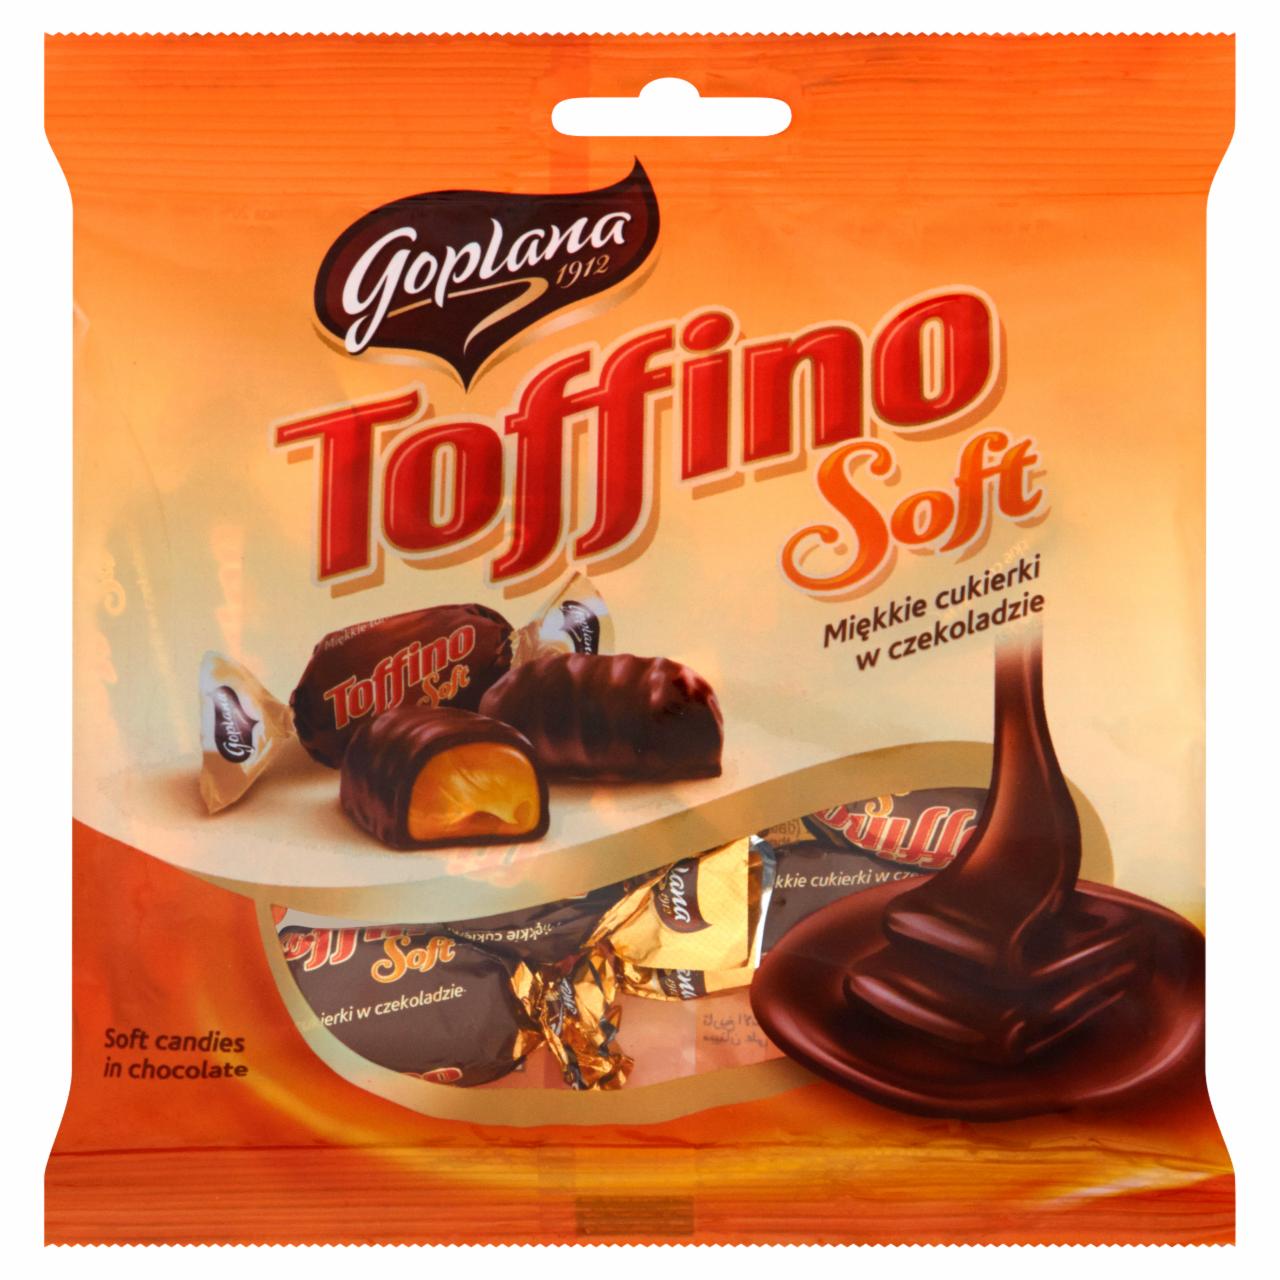 Zdjęcia - Goplana Toffino Soft Miękkie cukierki w czekoladzie 80 g